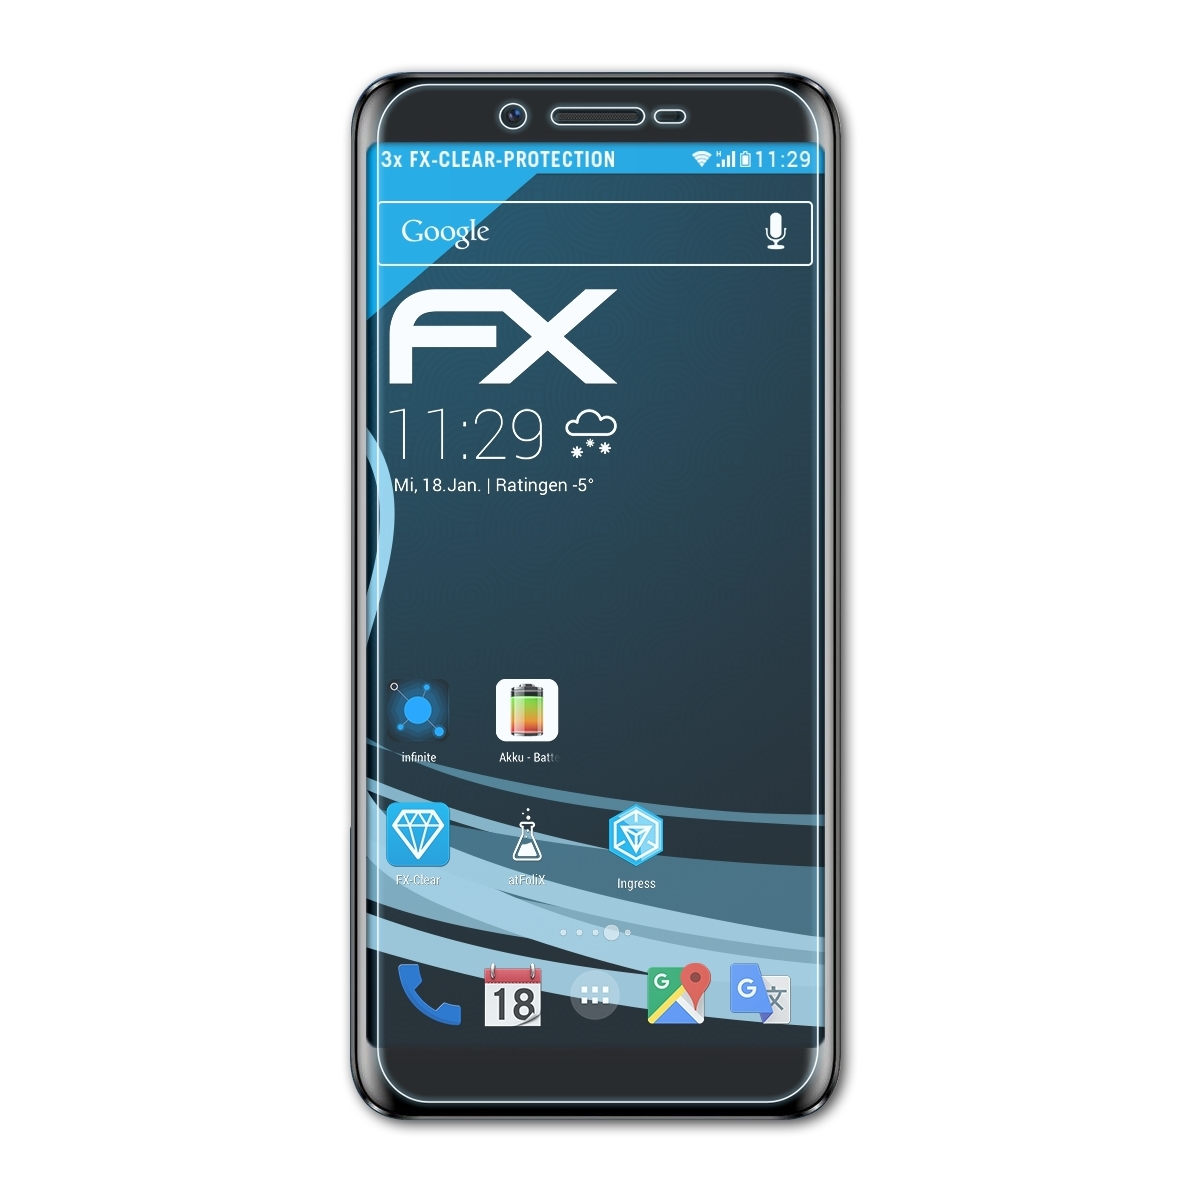 FX-Clear Displayschutz(für X60 ATFOLIX Doogee L) 3x